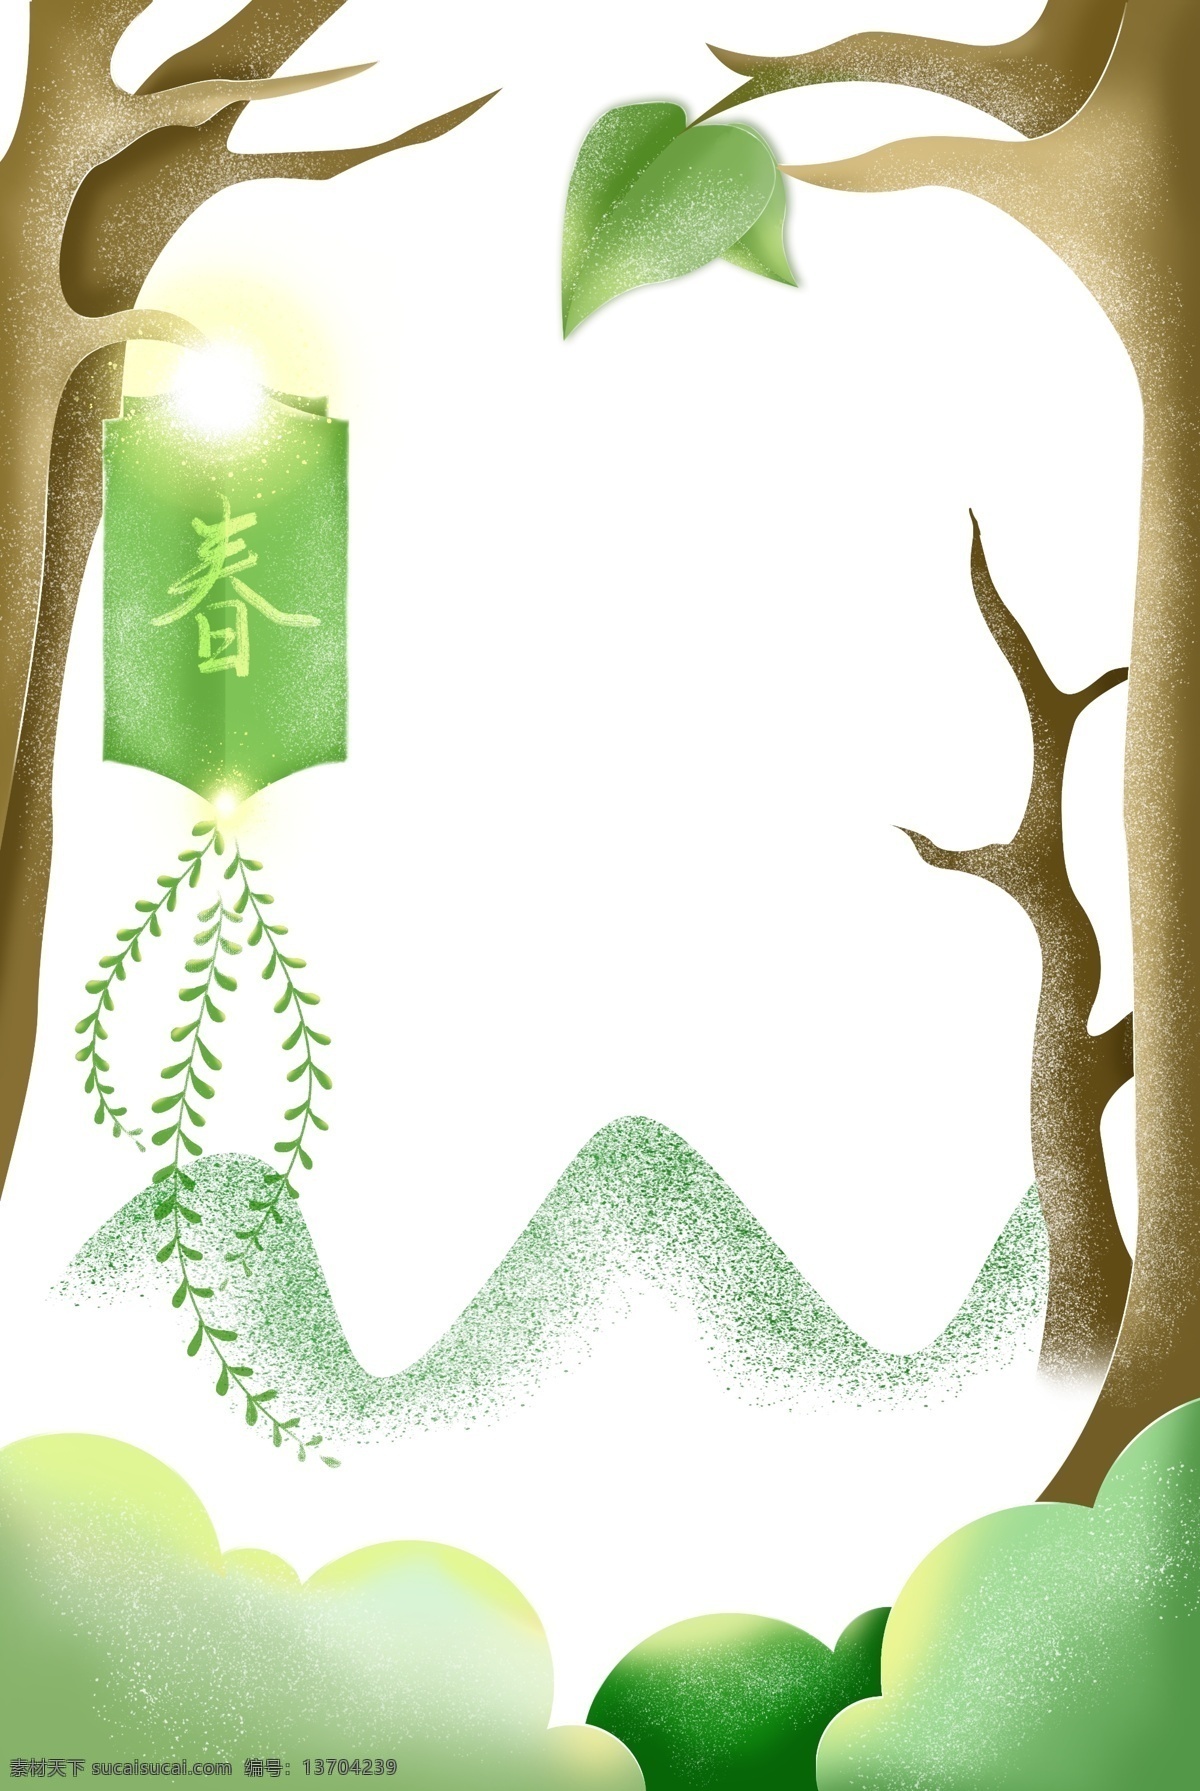 春天 梦幻 树林 立体 剪纸 海报 边框 春季 春 柳树 绿色 植物 光感 渐变 简约 插画 手绘 树 叶 芽